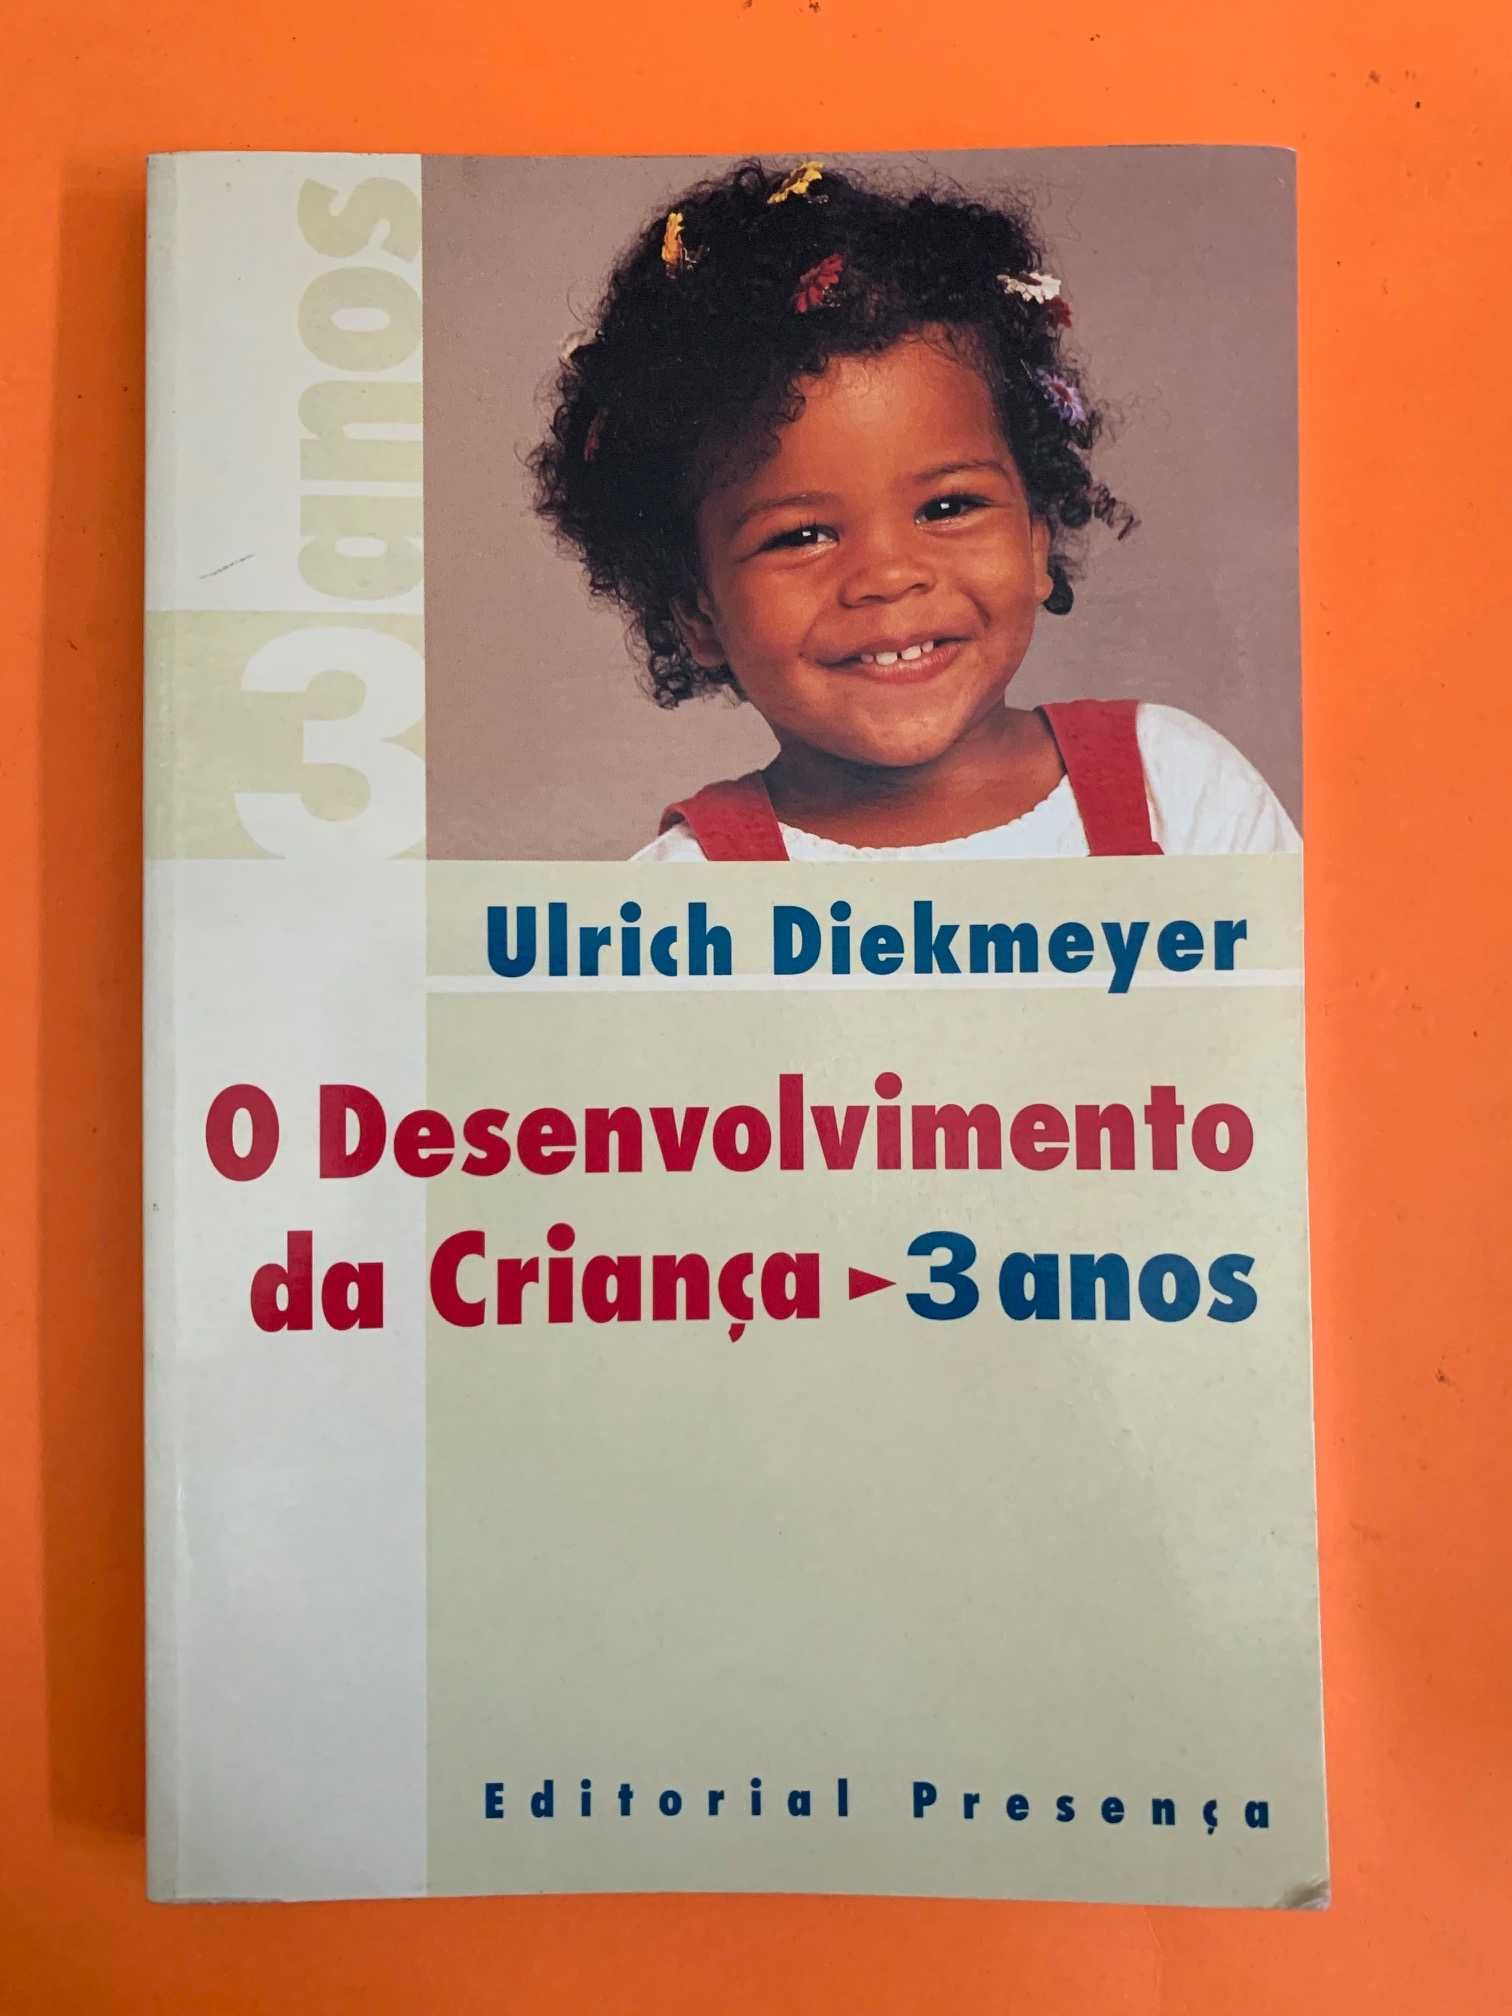 O Desenvolvimento da Criança 3 anos - Ulrich Diekmeyer